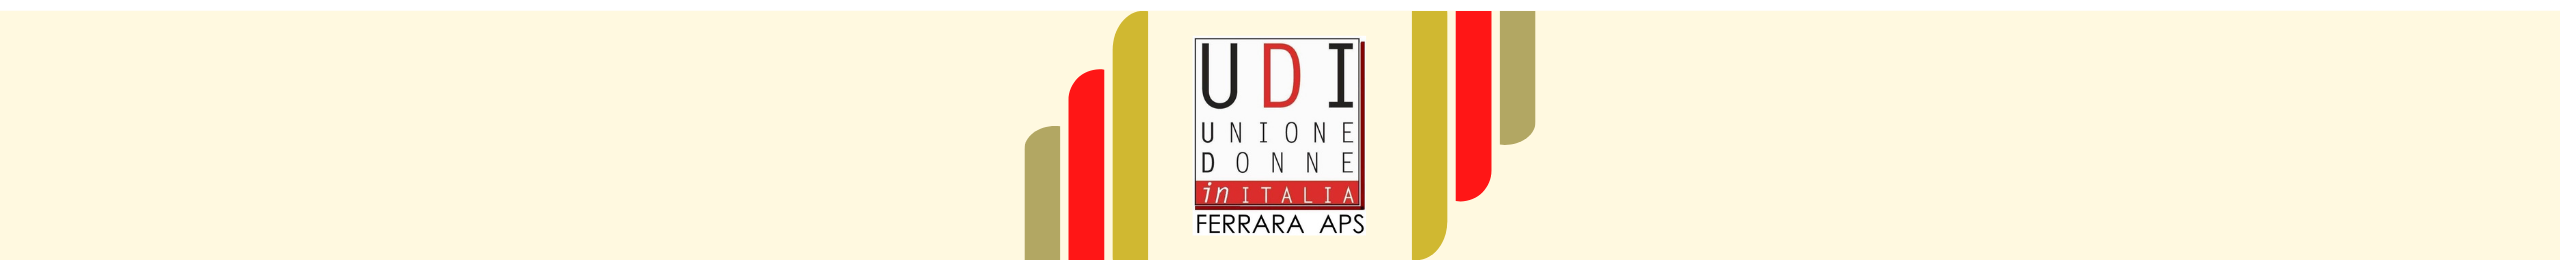 UDI Ferrara